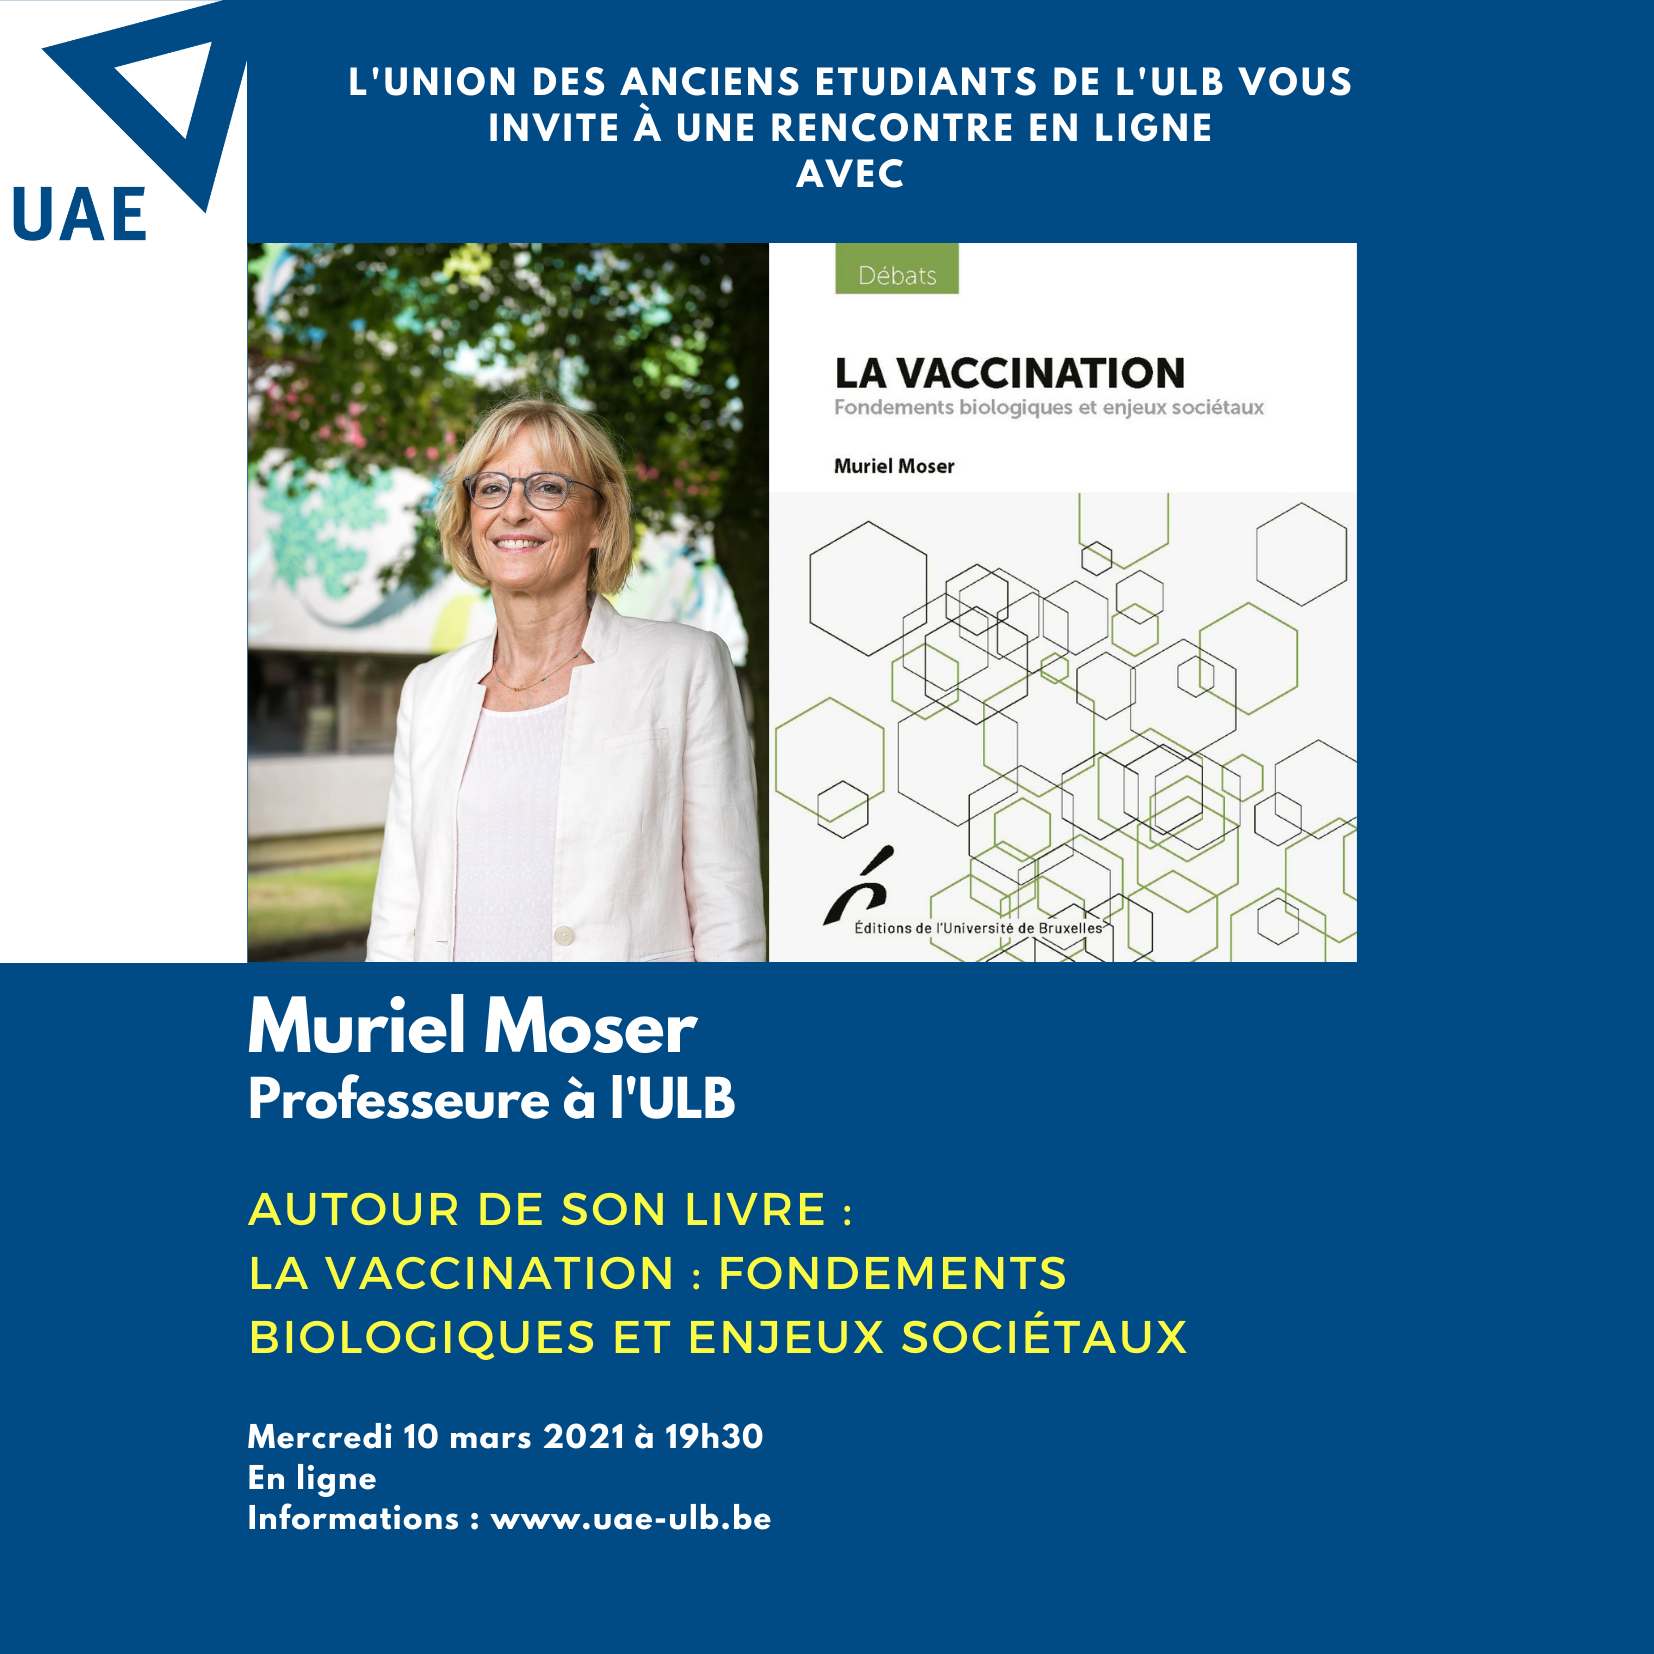 Rencontre en ligne avec Muriel Moser : “La vaccination : fondements biologiques et enjeux sociétaux”.